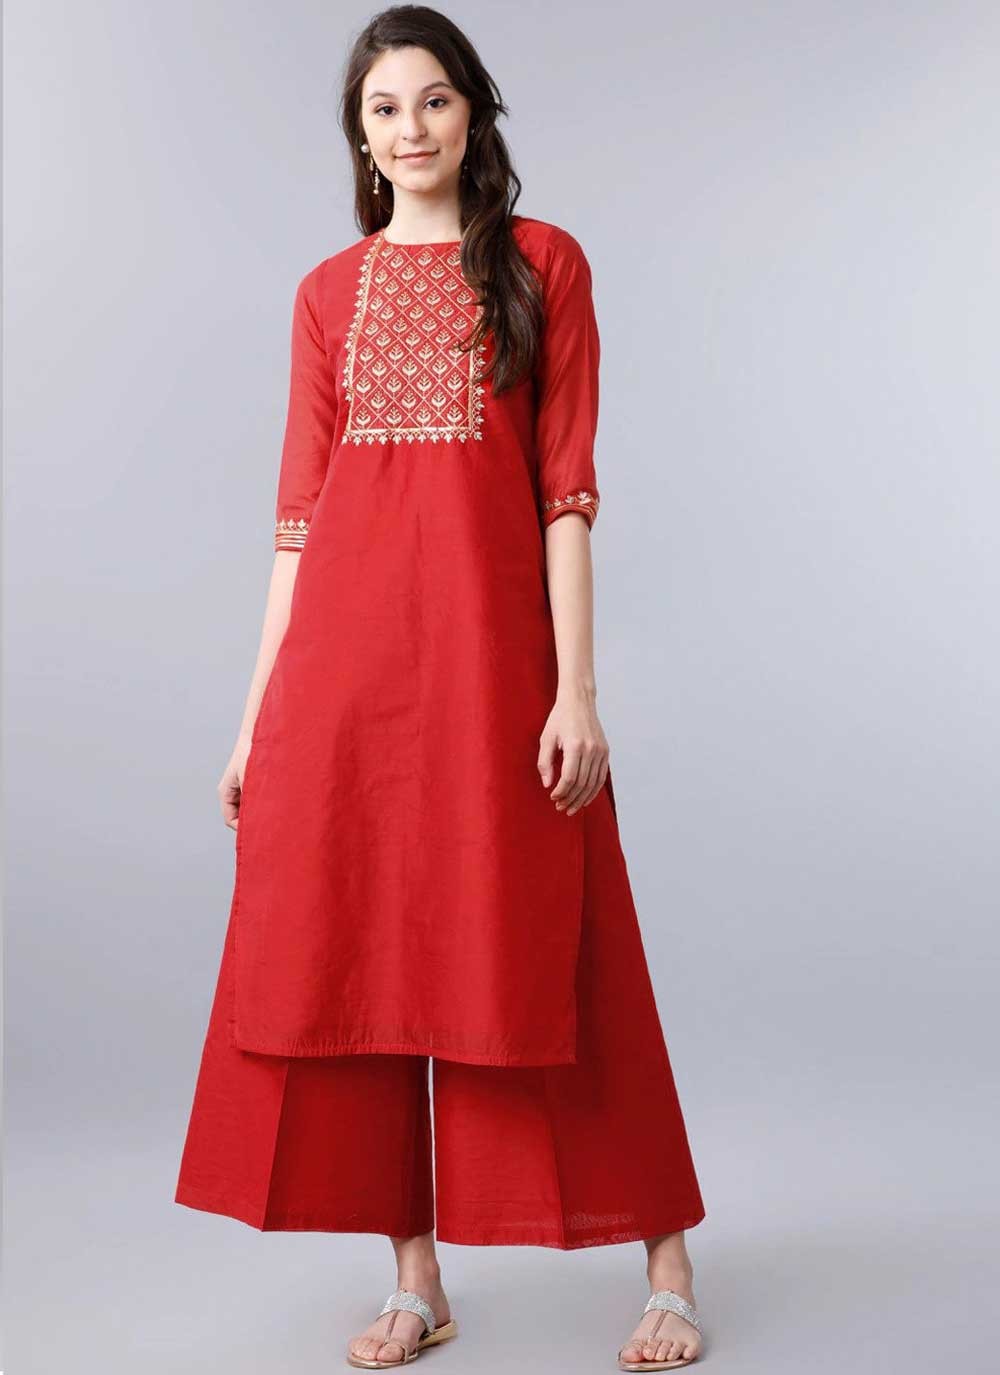 Red Kurtas - Buy Trendy Red Kurtas Online in India | Myntra